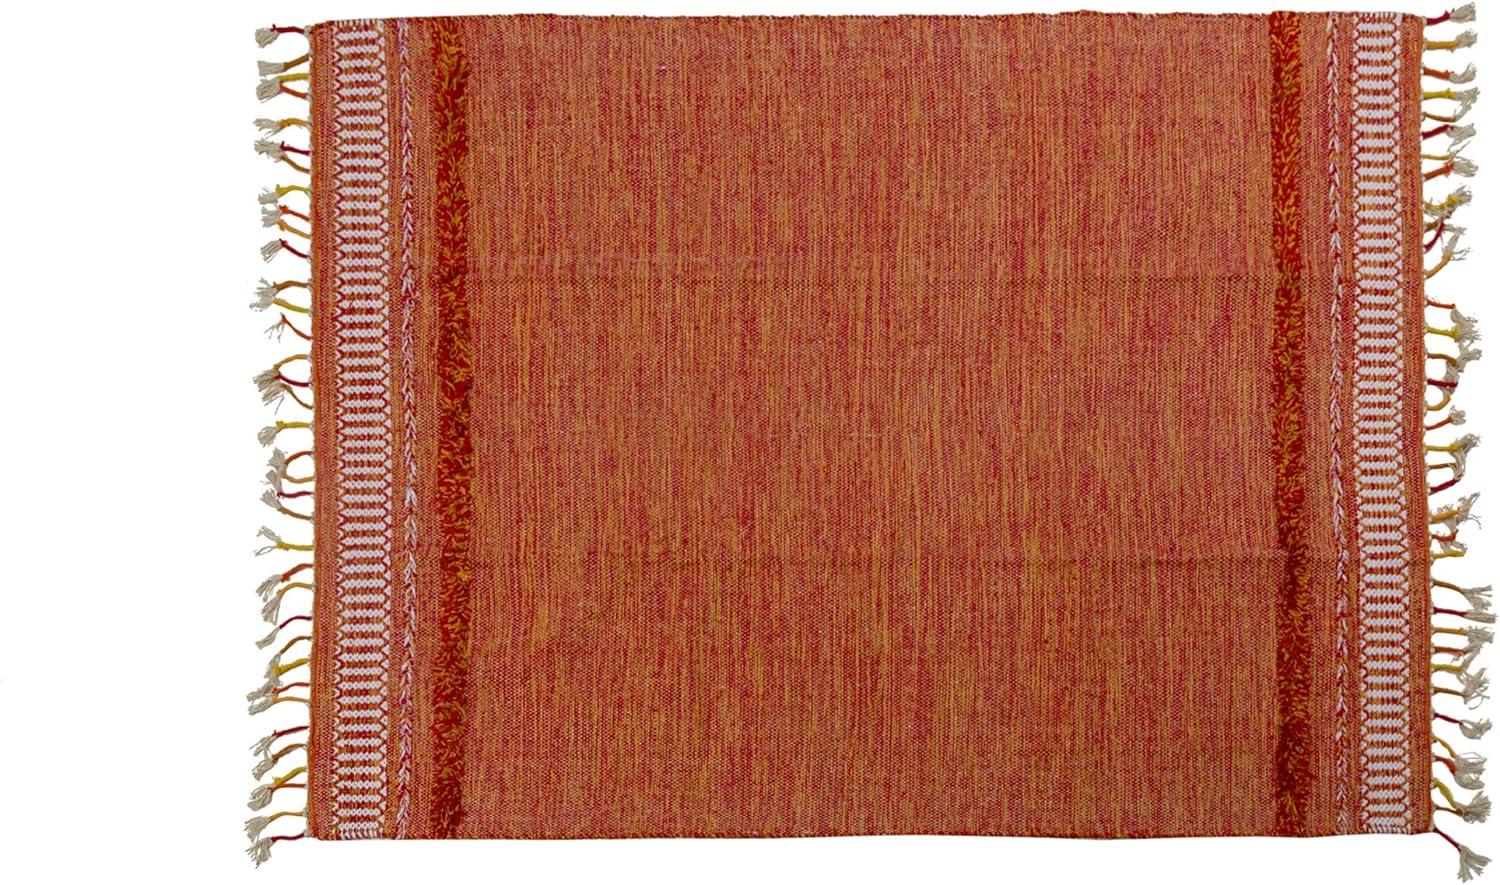 Dmora Moderner Boston-Teppich im Kelim-Stil, 100% Baumwolle, orange, 110x60cm Bild 1